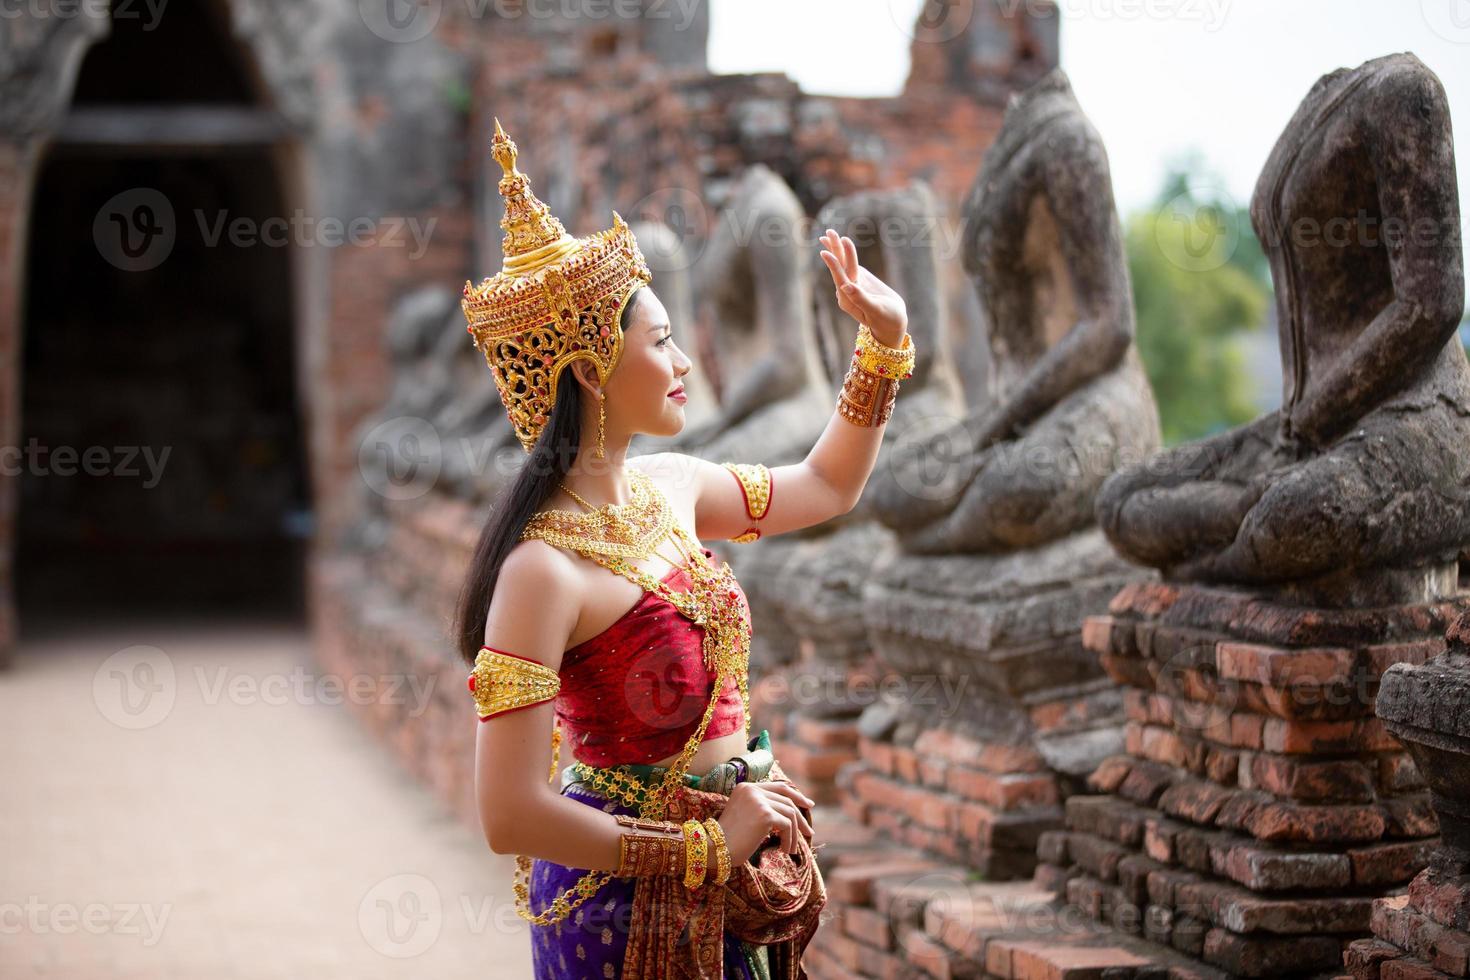 thai kostuum jurk mooie vrouwen, kostuum thaise stijl in thailand foto